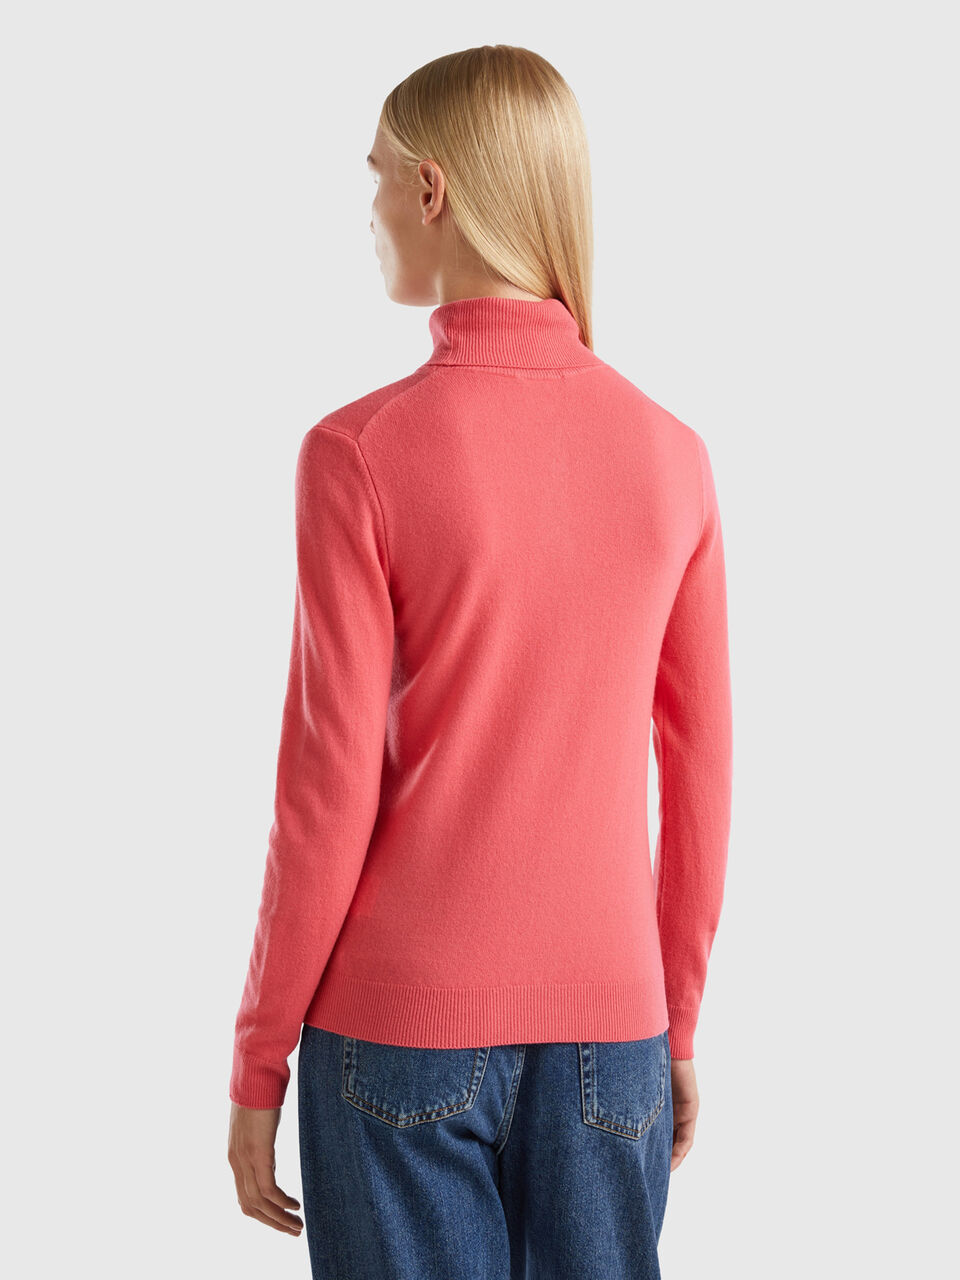 Jersey de cuello alto rojo de pura lana merina - Rojo